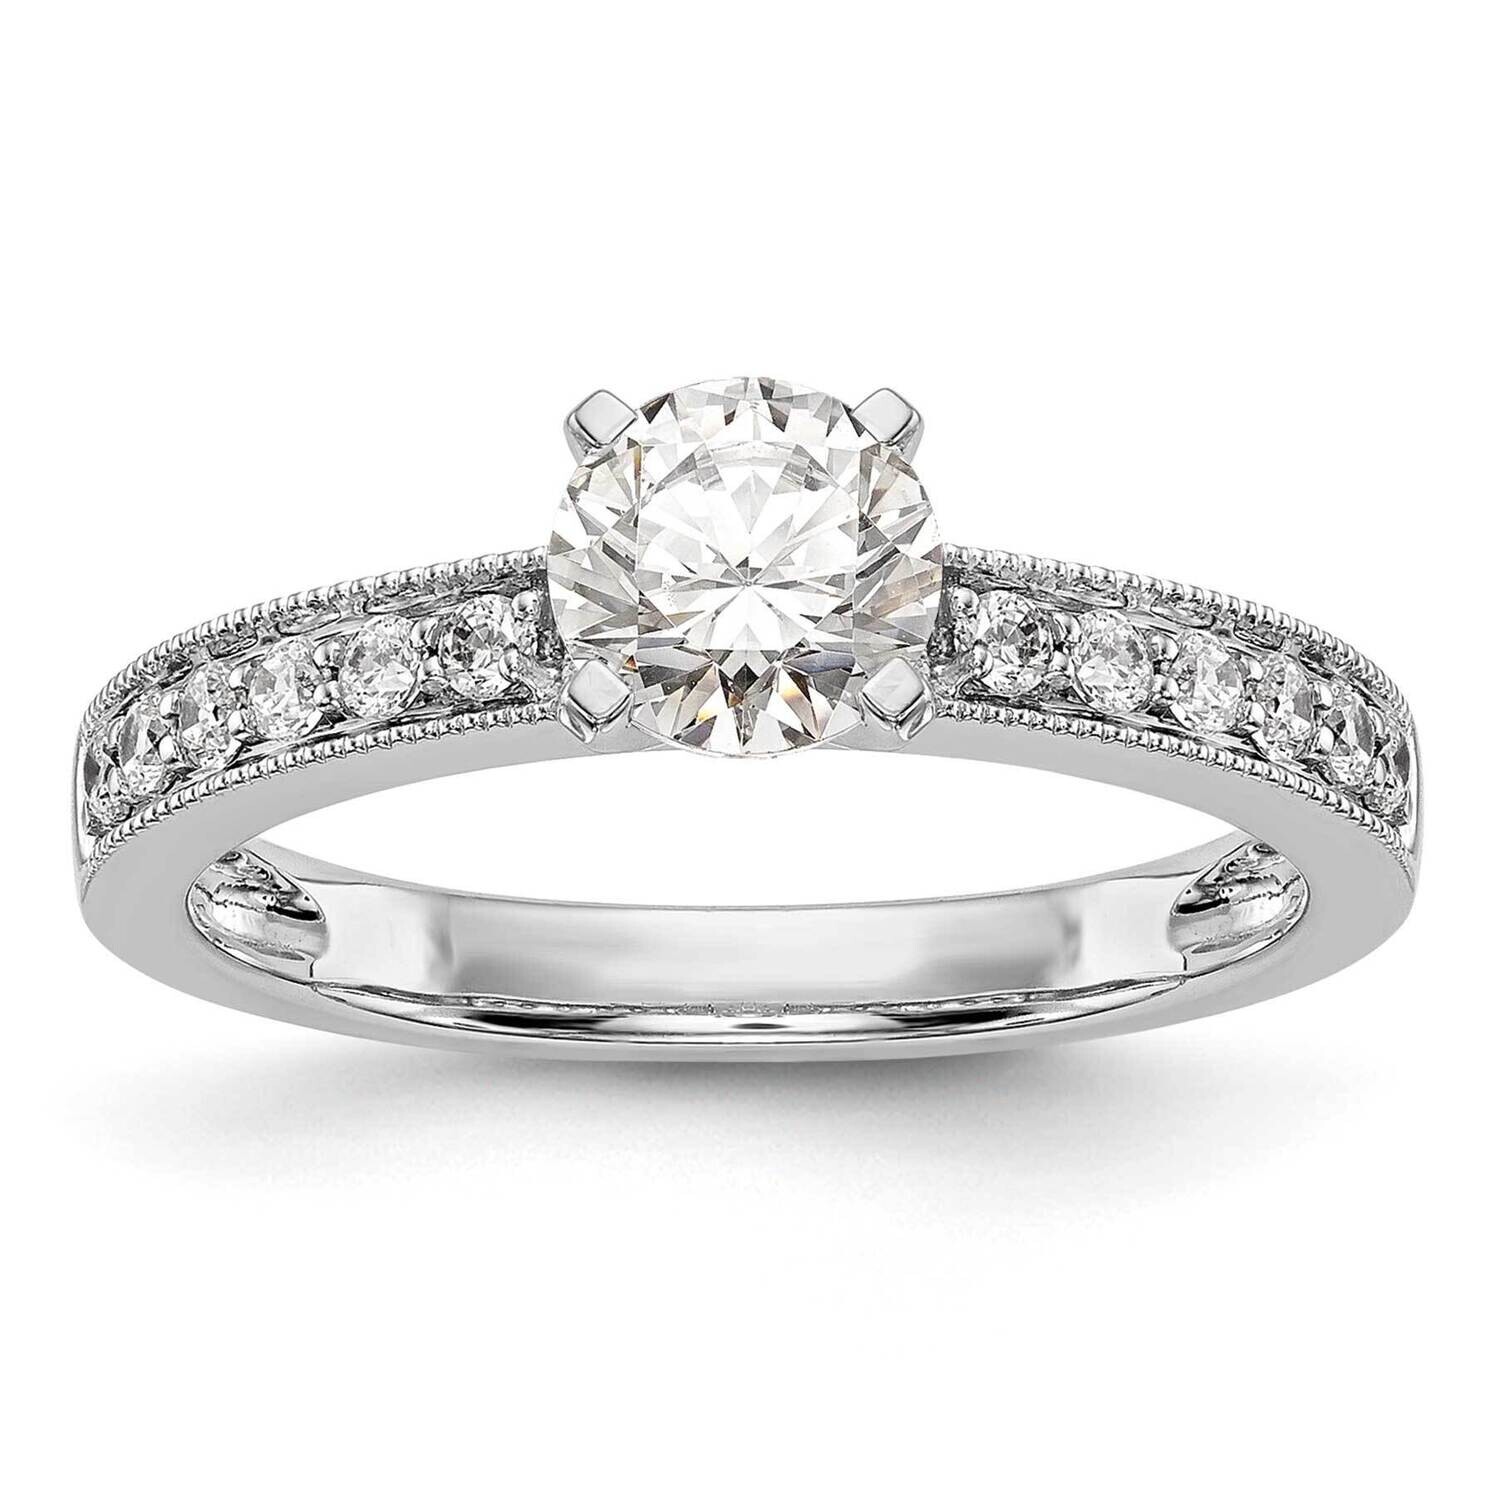 Peg Set 1/4 Carat Diamond Semi-Mount Engagement Ring 14k White Gold RM2878E-024-WAA